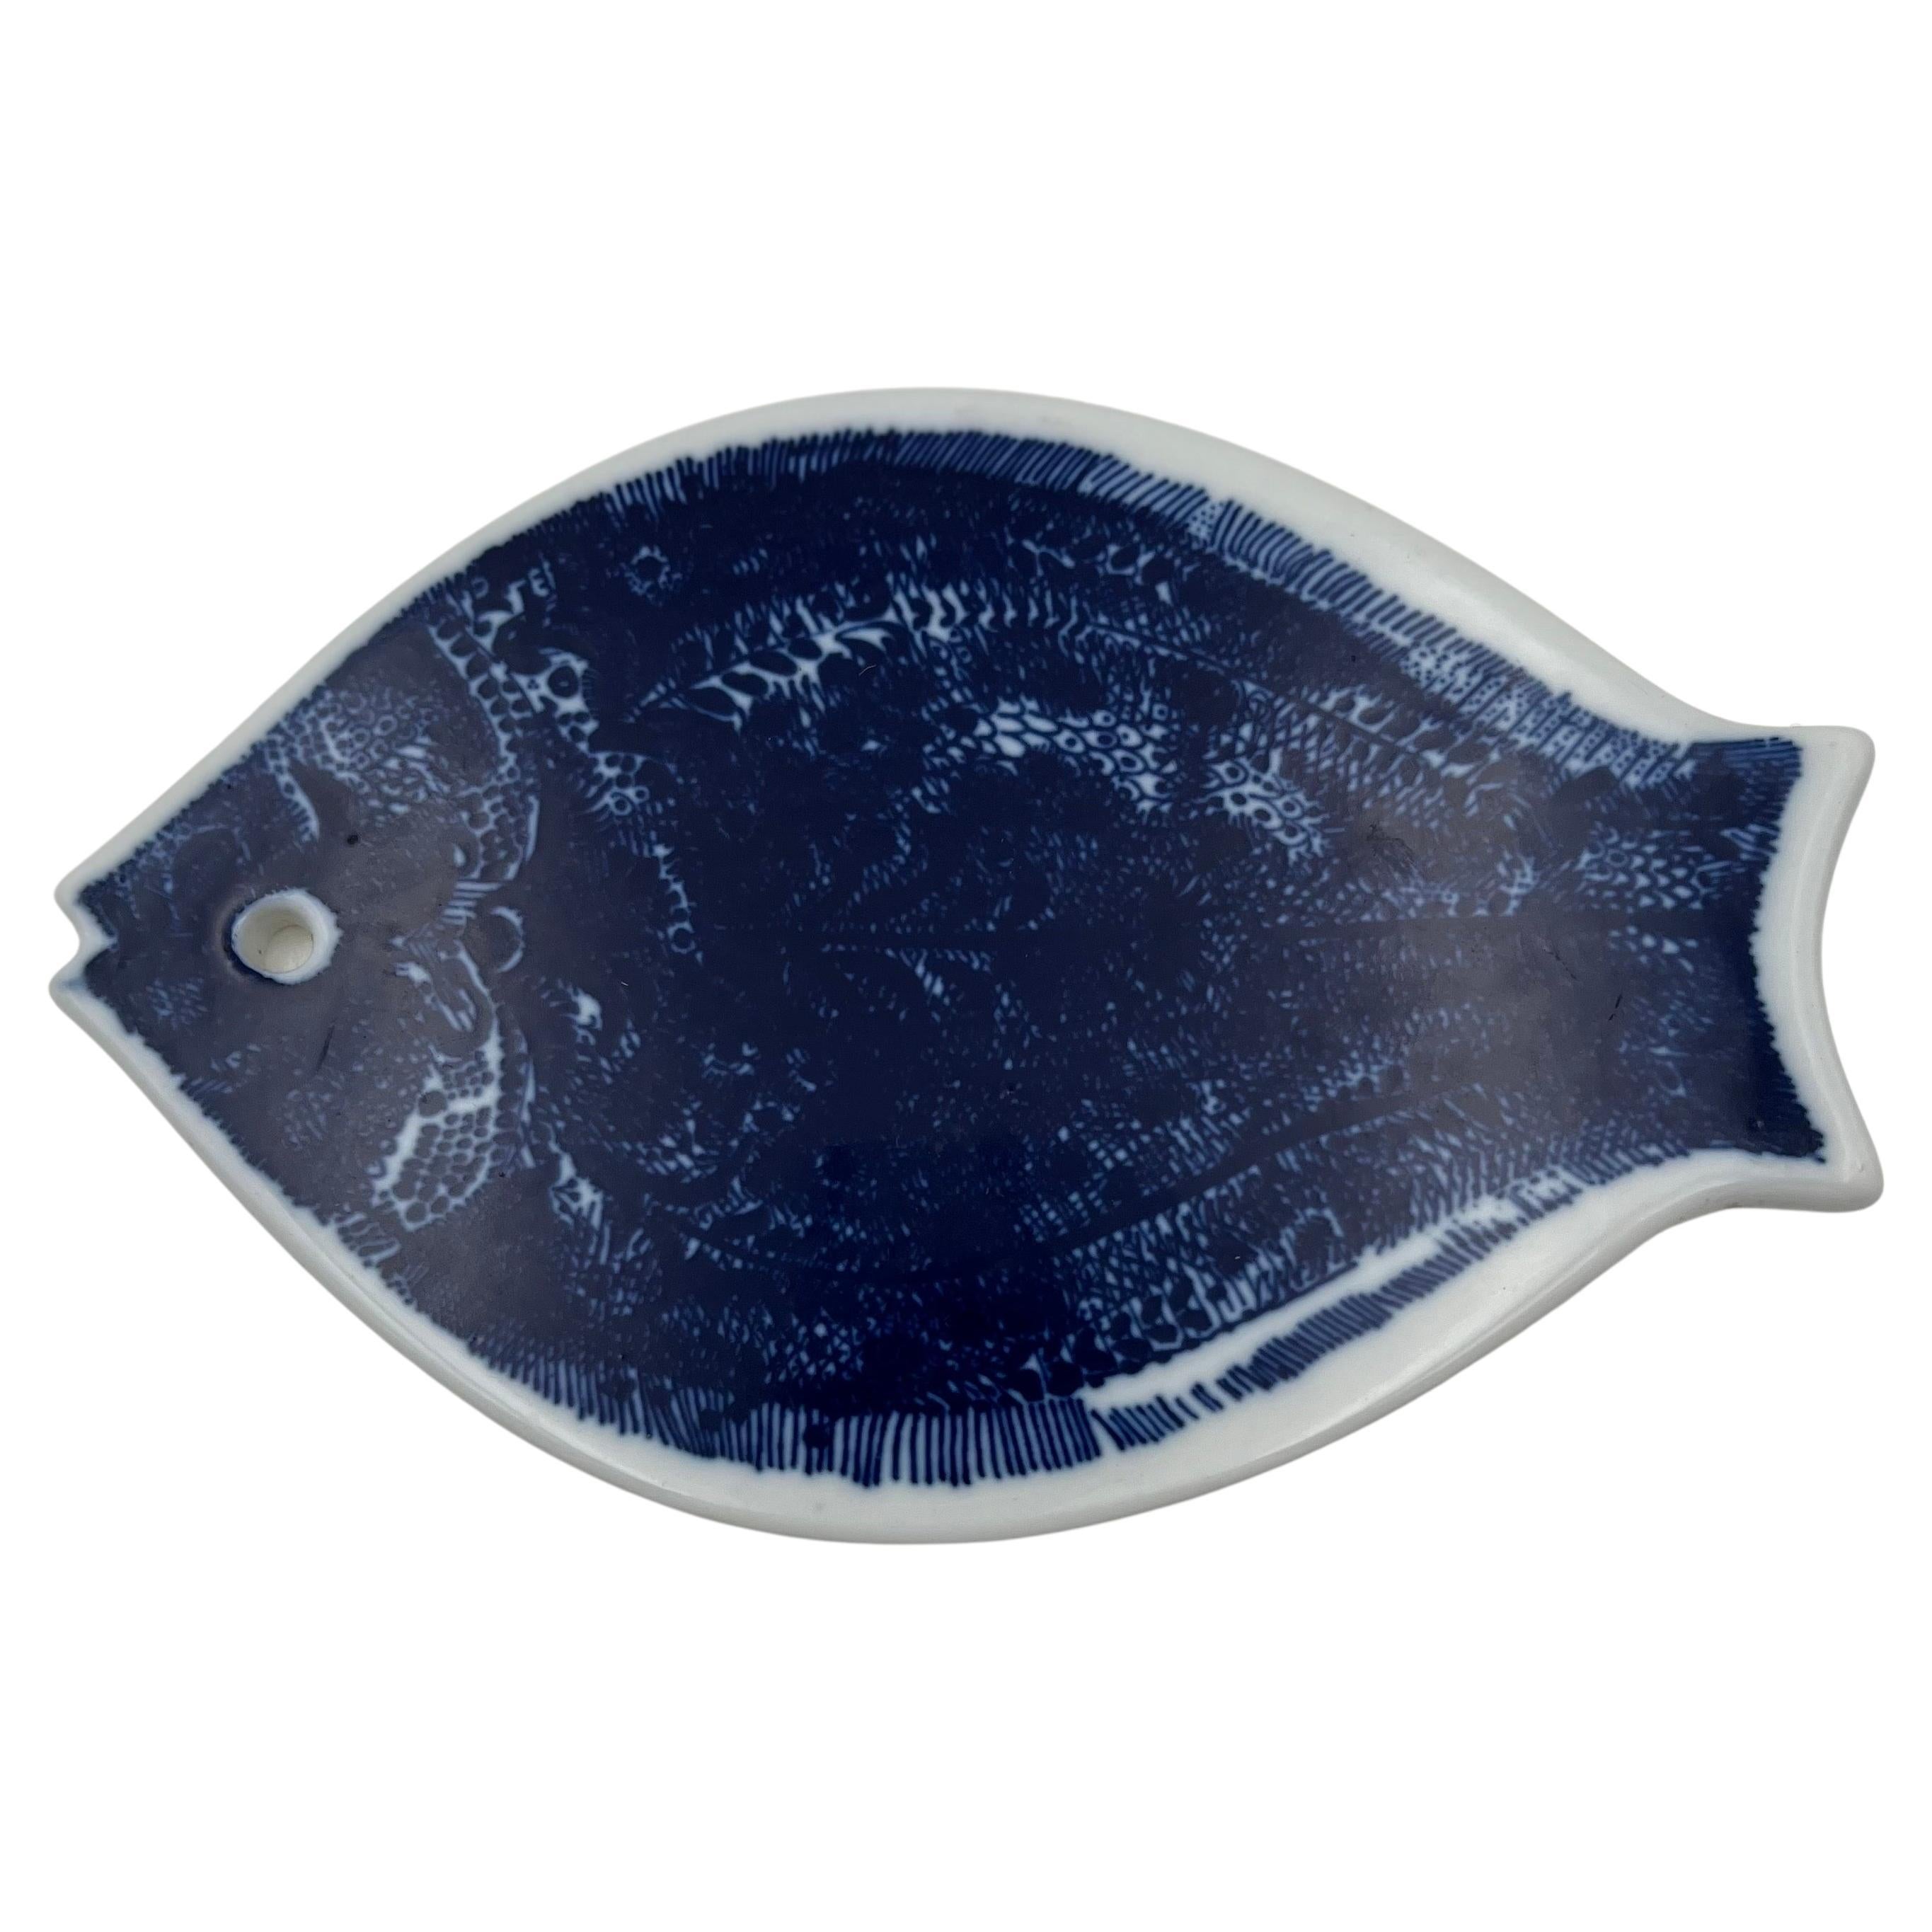 Dänischer moderner Fisch-Heißteller aus Keramik von Porsgrund Norwegen, handbemalt